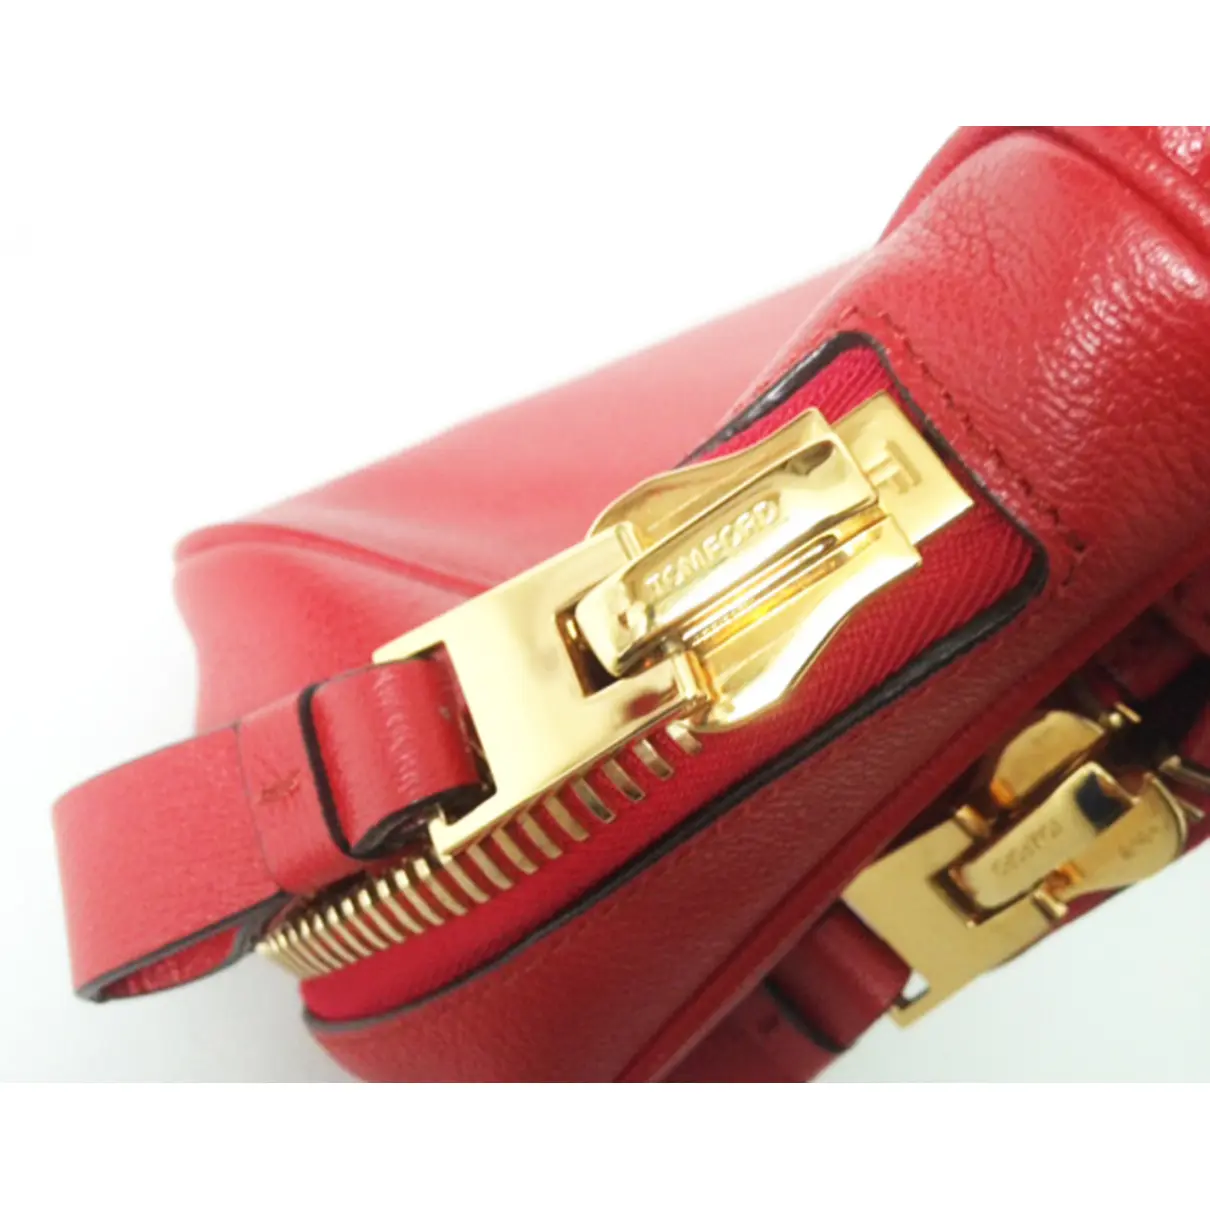 Jennifer leather handbag Tom Ford